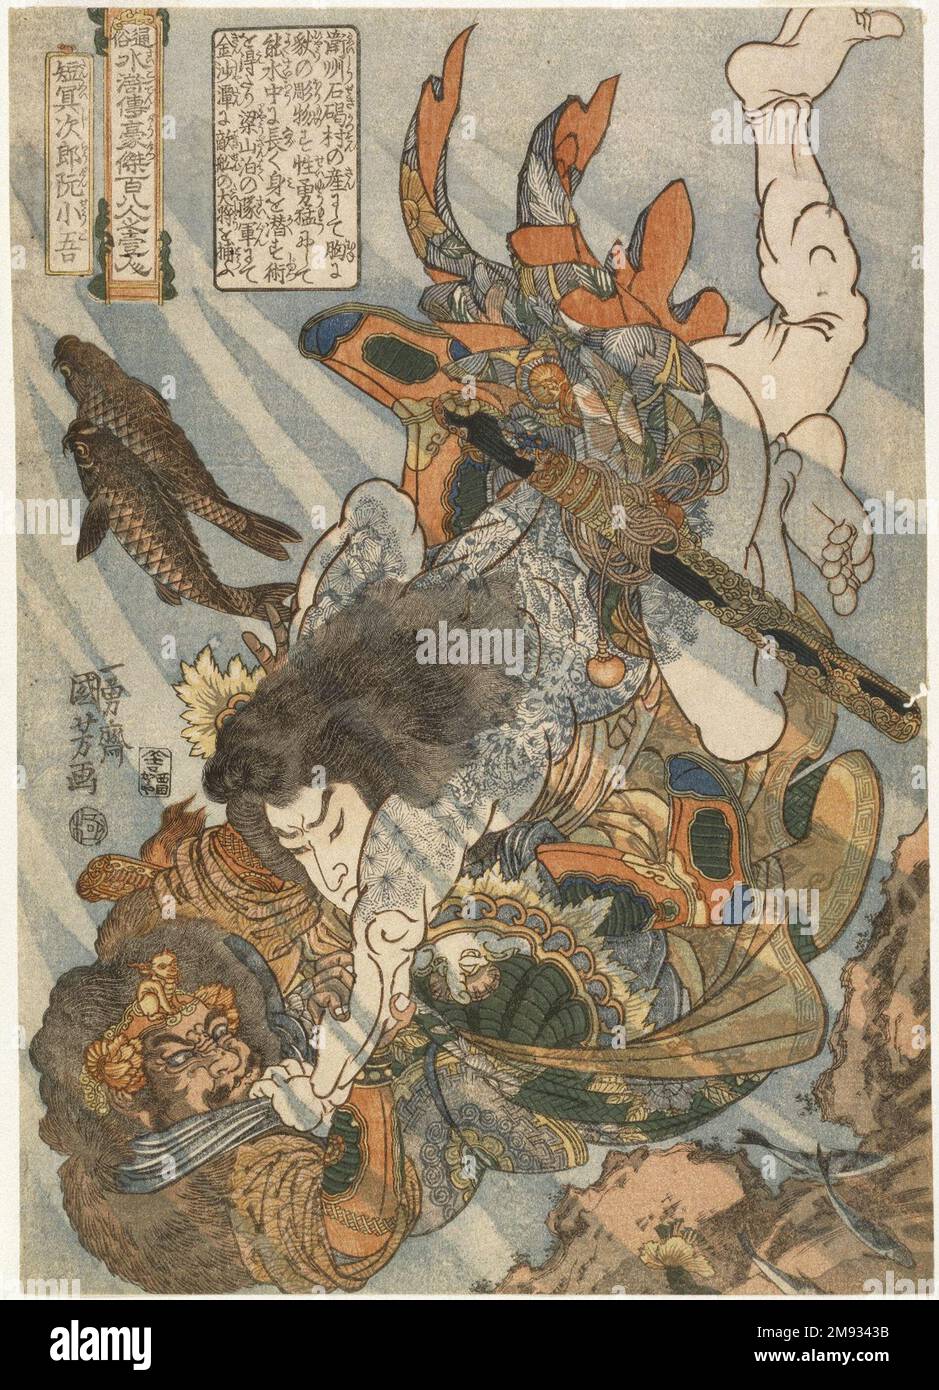 Tammeijiro Genshogo, della serie Tsuzoku Suikoden Goketsu Hyakuhachinin no Hitori Utagawa Kuniyoshi (giapponese, 1798-1861). , ca. 1823. Stampa a blocchi di legno a colori su carta, 14 5/16 x 10 3/16 pollici (36,4 x 25,8 cm). Come descritto nella casella quadrata di testo nell'angolo in alto a sinistra, il bandito Tanmeijiro Genshogo era noto per il suo impressionante tatuaggio e per la sua capacità di rimanere sotto l'acqua per un lungo periodo di tempo. Kuniyoshi raffigura il wrestling bandito con un avversario sott'acqua. L'acqua viene resa con grande abilità, con uno strato di inchiostro blu modulato stampato sull'intera composizione. Asiatico A. Foto Stock